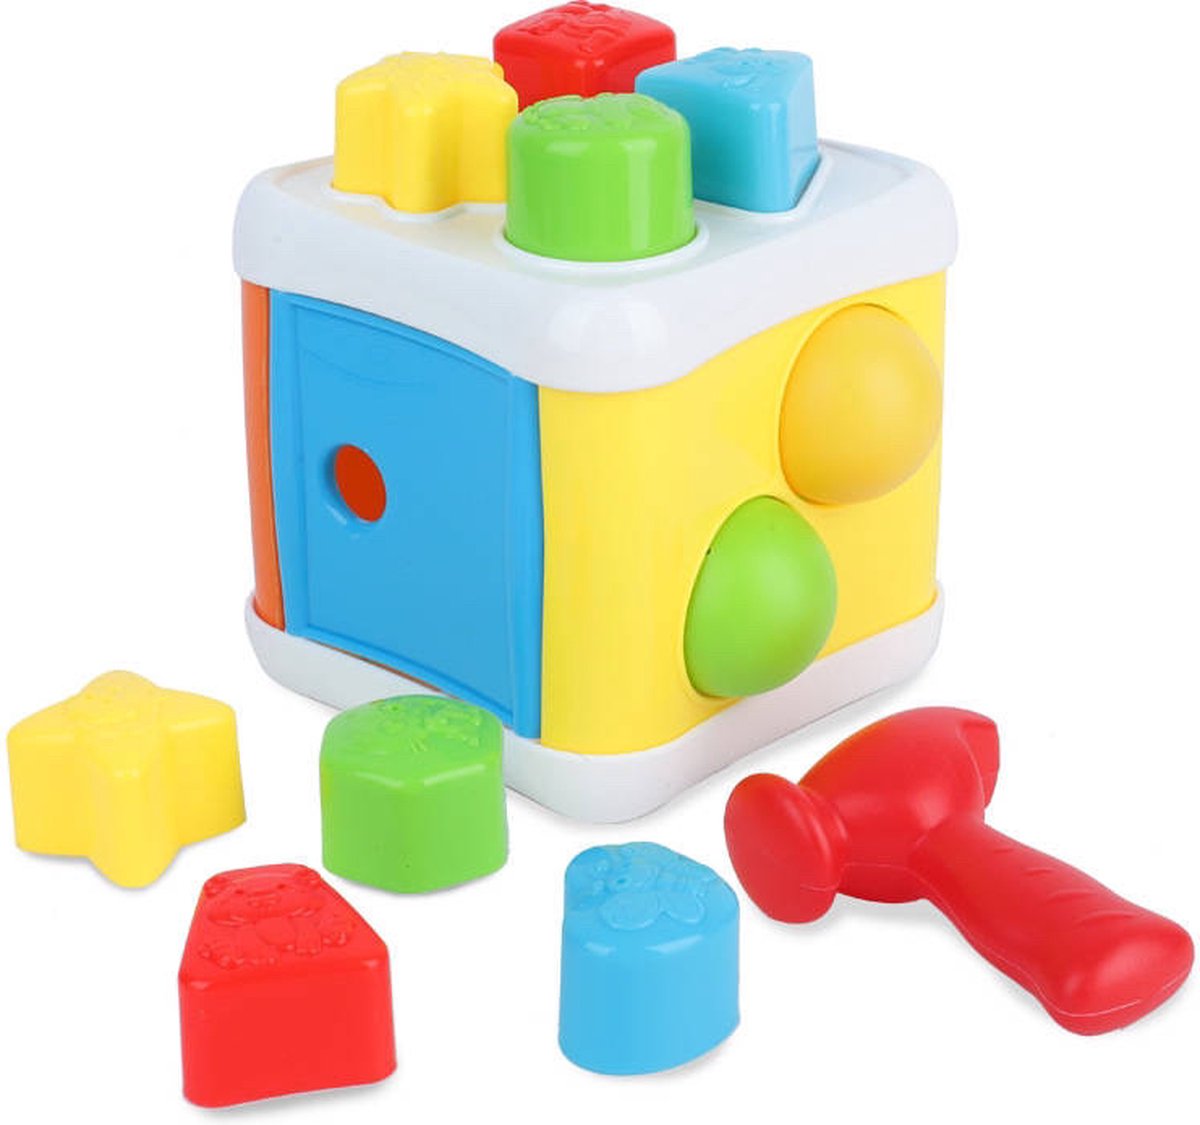 Baby vormpjes - Activiteiten kubus - Kubus sorteerspel - educatief - leerspel - vormenstoof - geometrische vormen - blokken - speelblokken - babyspeelgoed - blokkendoos